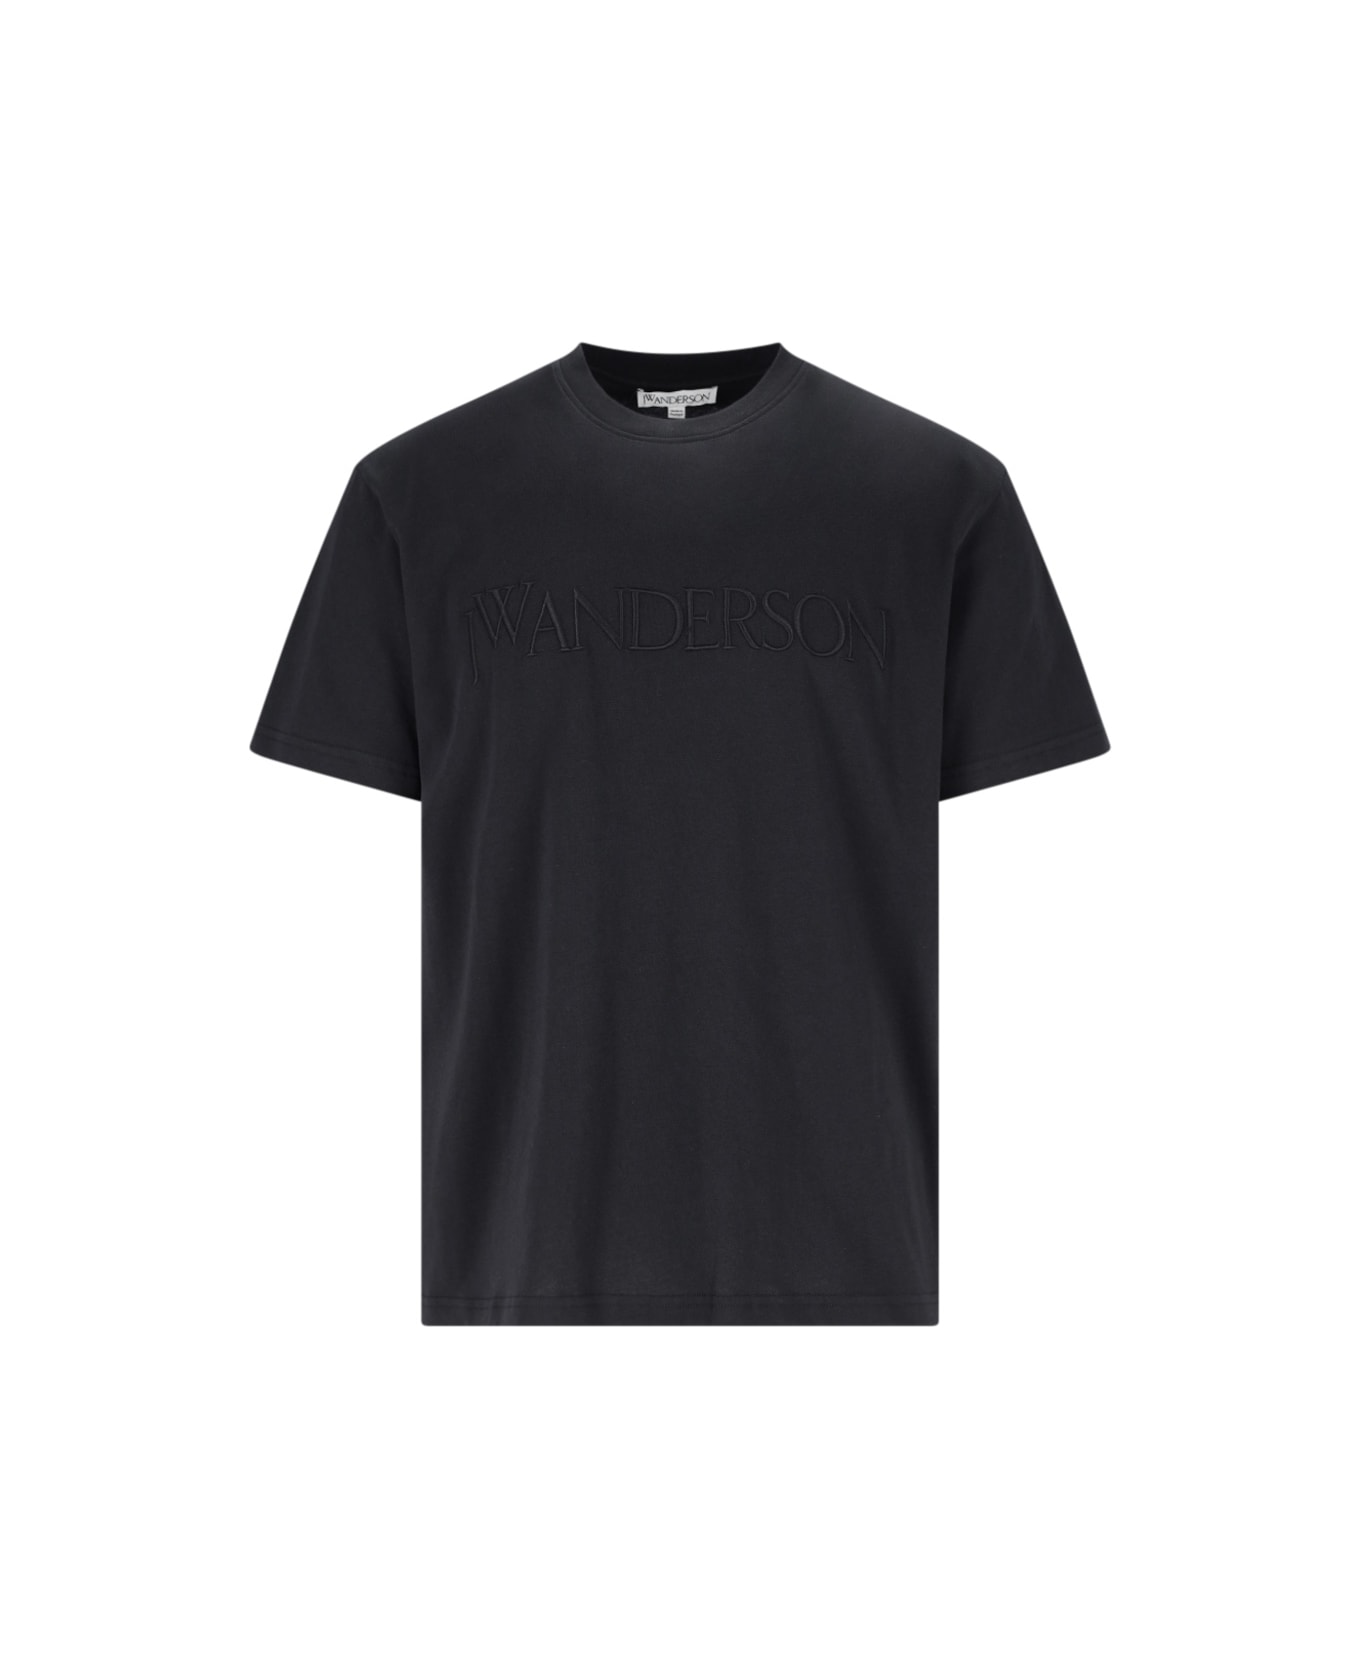 J.W. Anderson Logo T-shirt - Black   シャツ